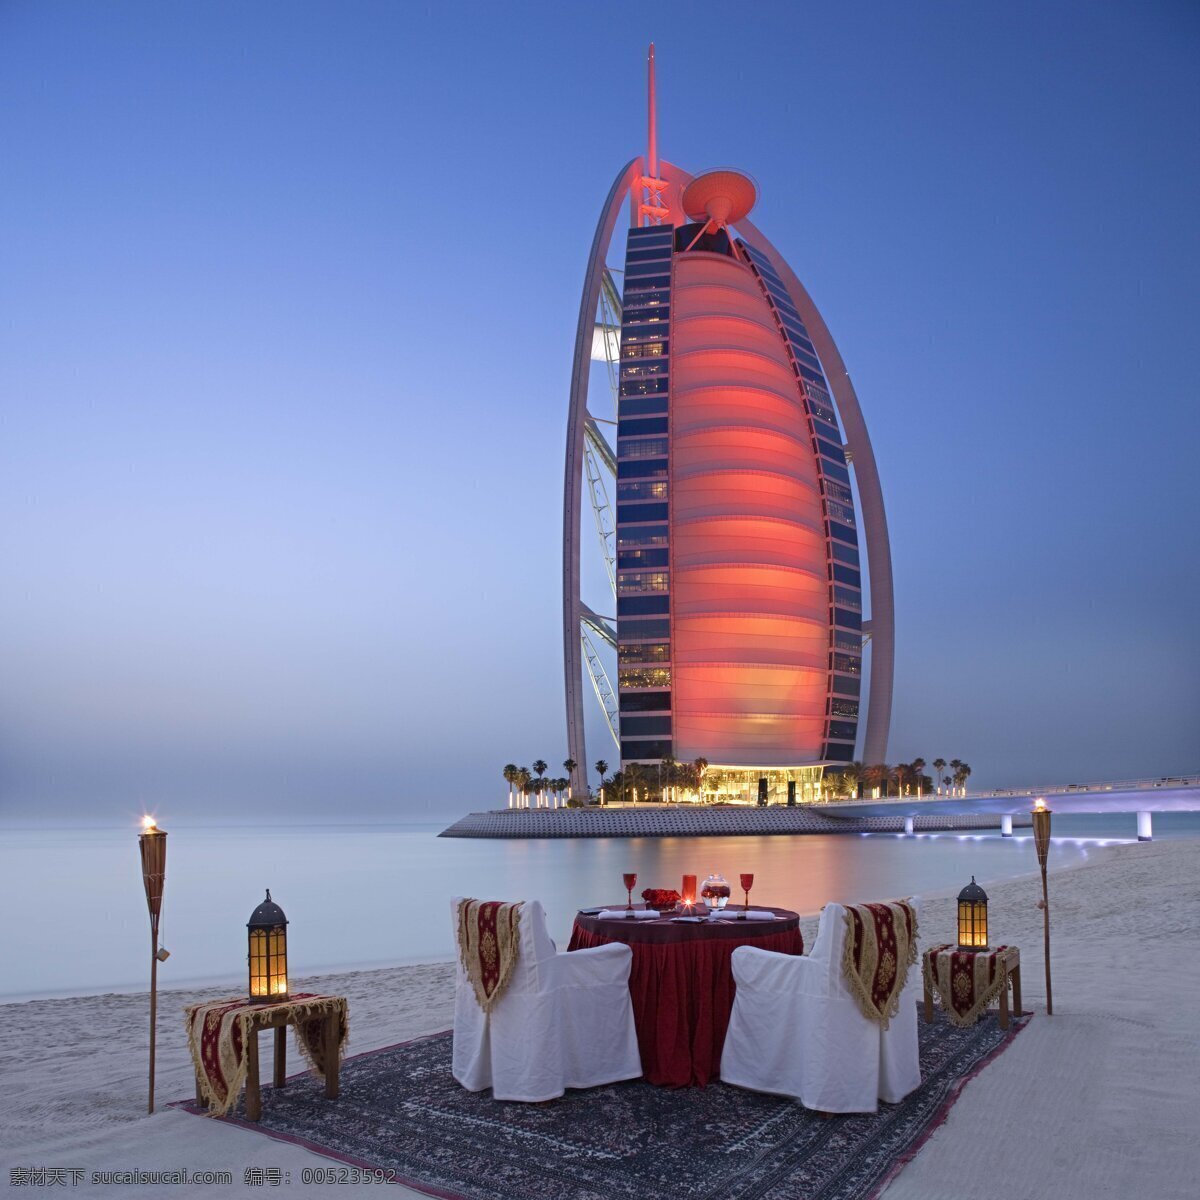 迪拜 地毯 国外旅游 海边 海滩 豪华 酒店 旅游摄影 七星 帆船 majlis al bahar 酒廊 七星帆船 室内 桌子椅子 椅套 沙滩 夜景 psd源文件